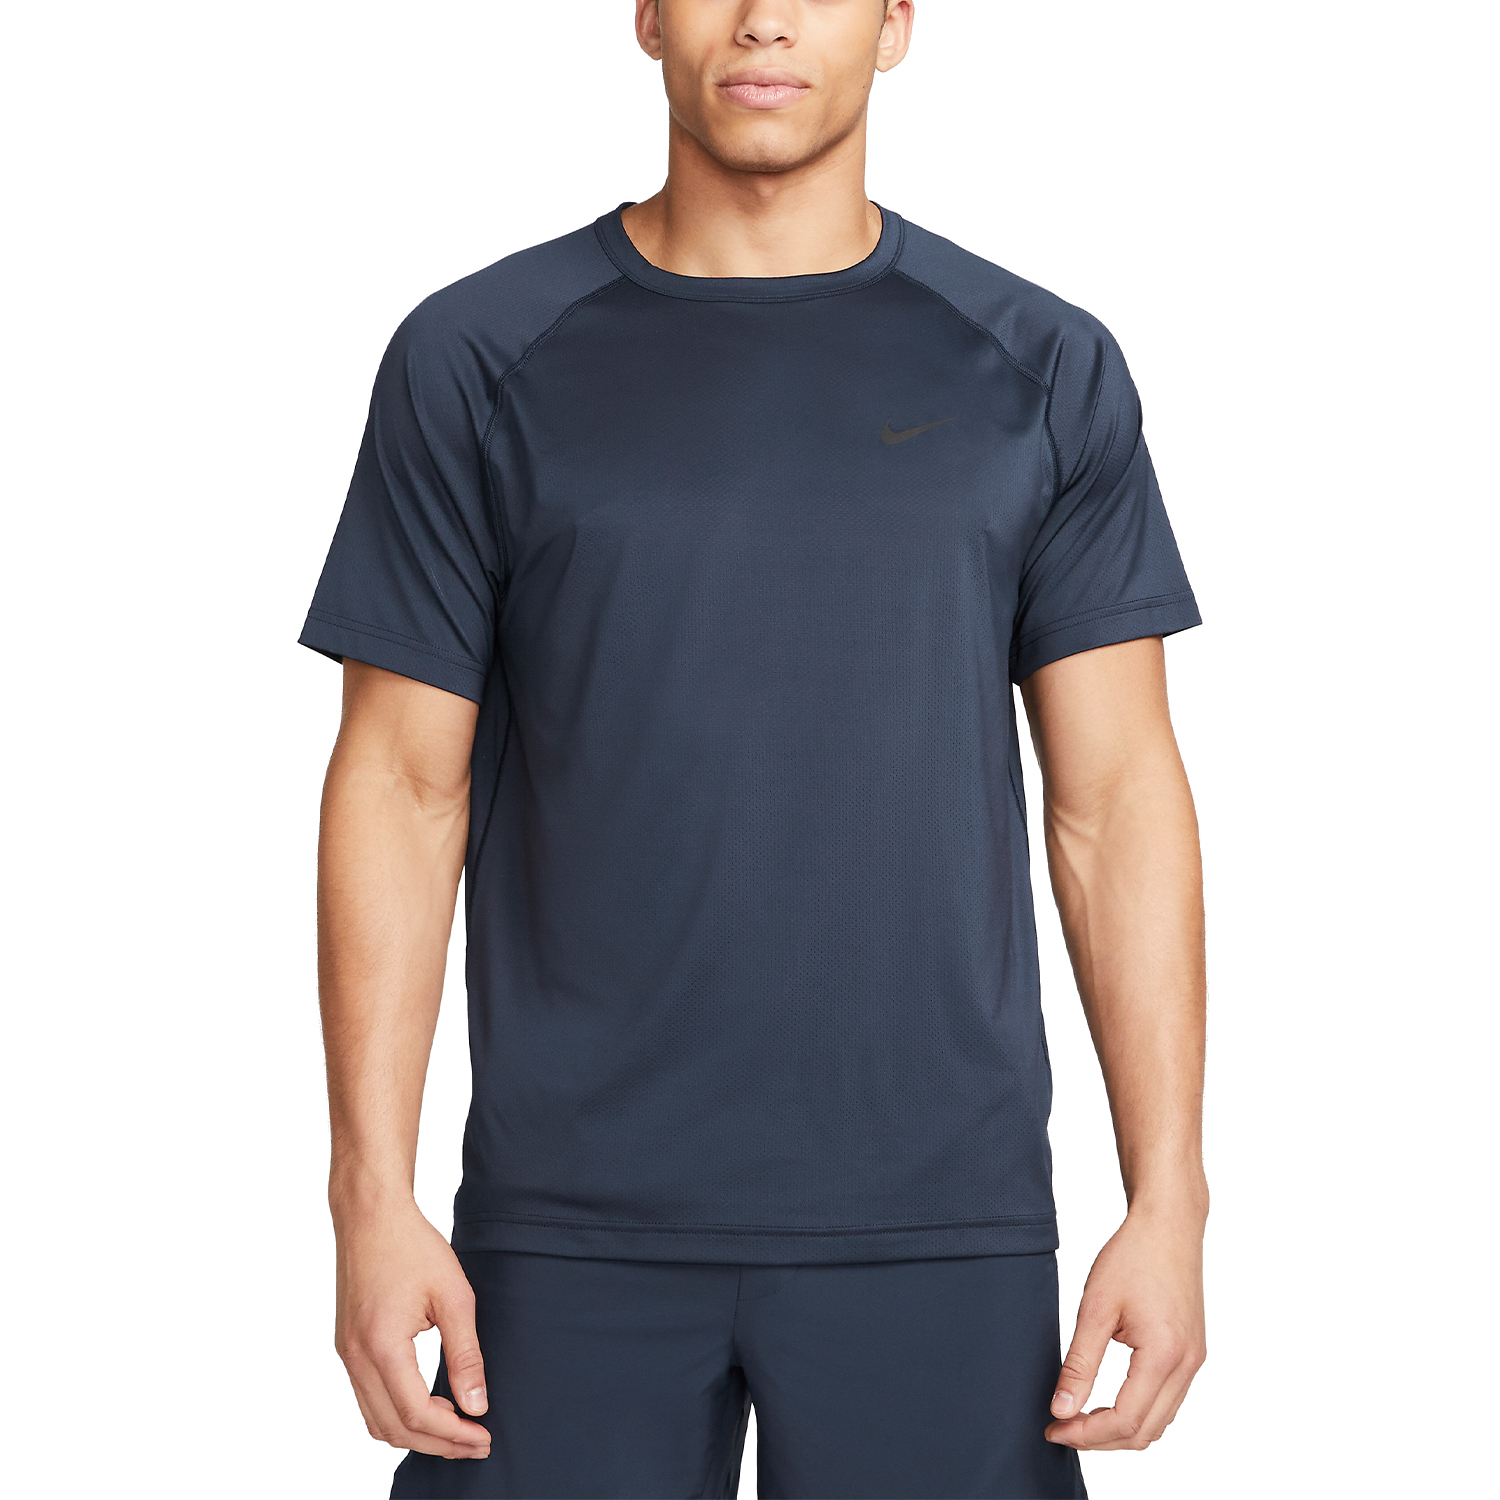 Nike Dri-FIT Ready T-Shirt - Obsidian/Black